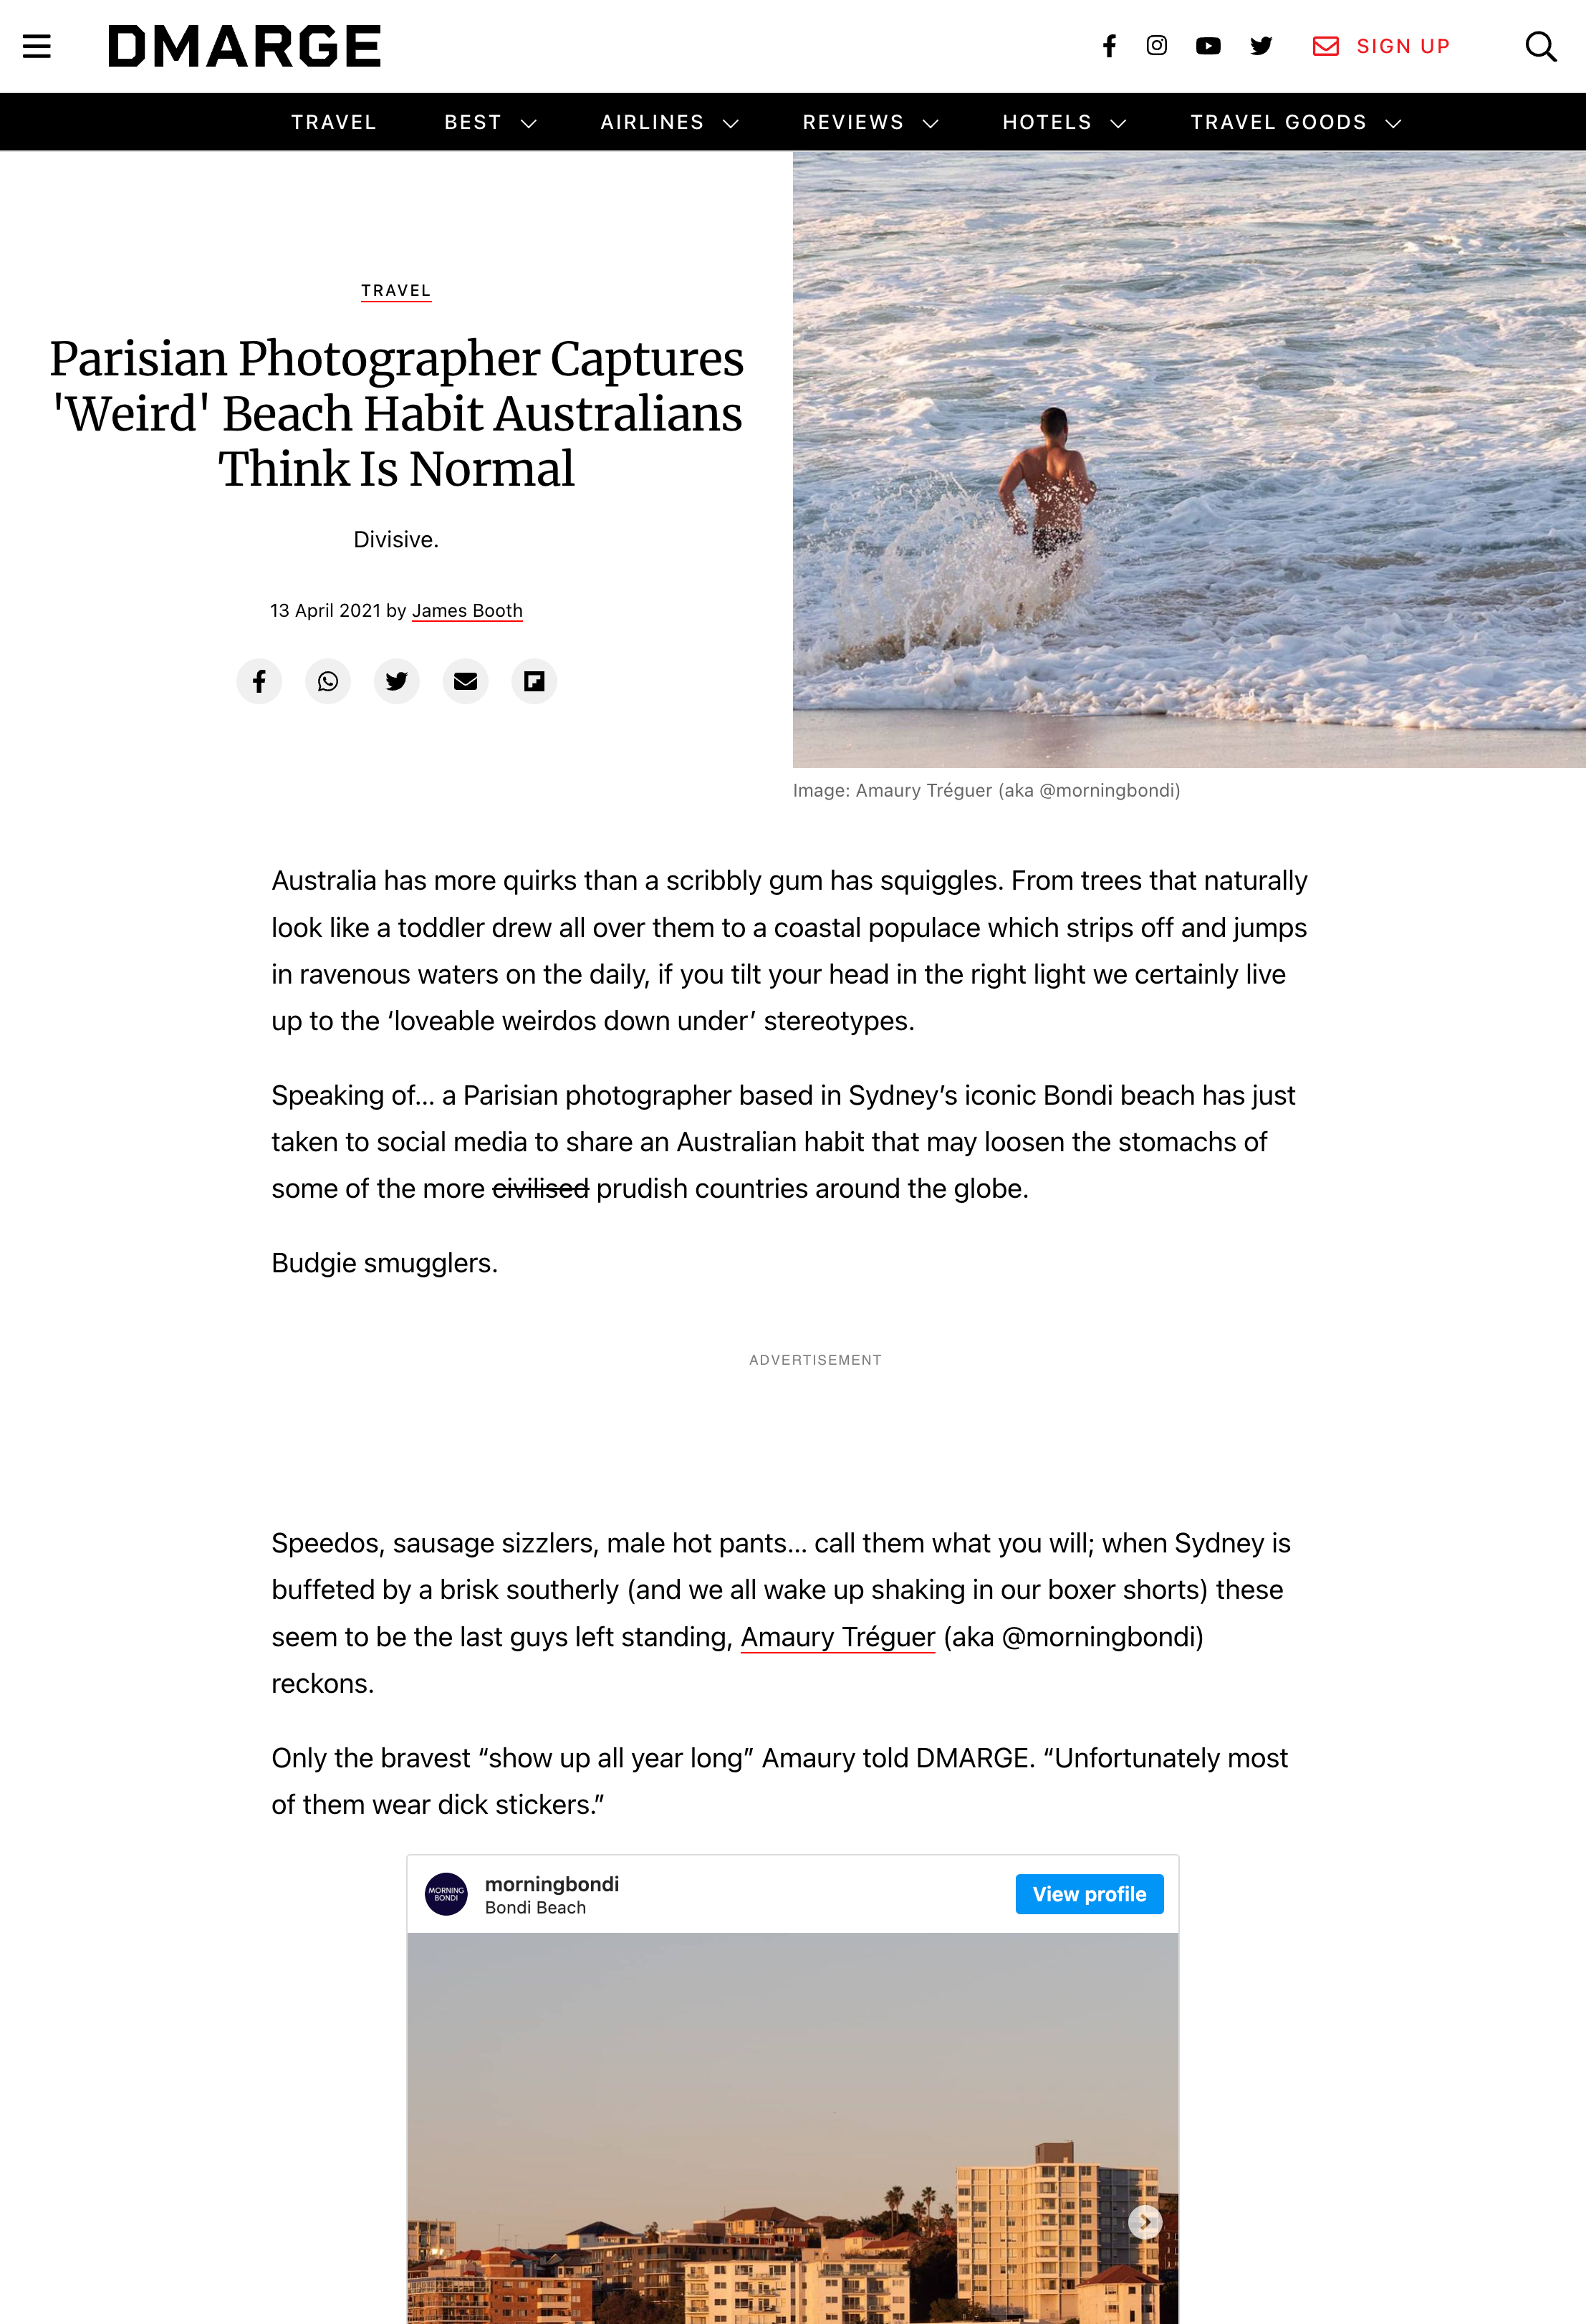 Parisian Photographer Captures 'Weird' Beach Habit Australians Think Is Normal